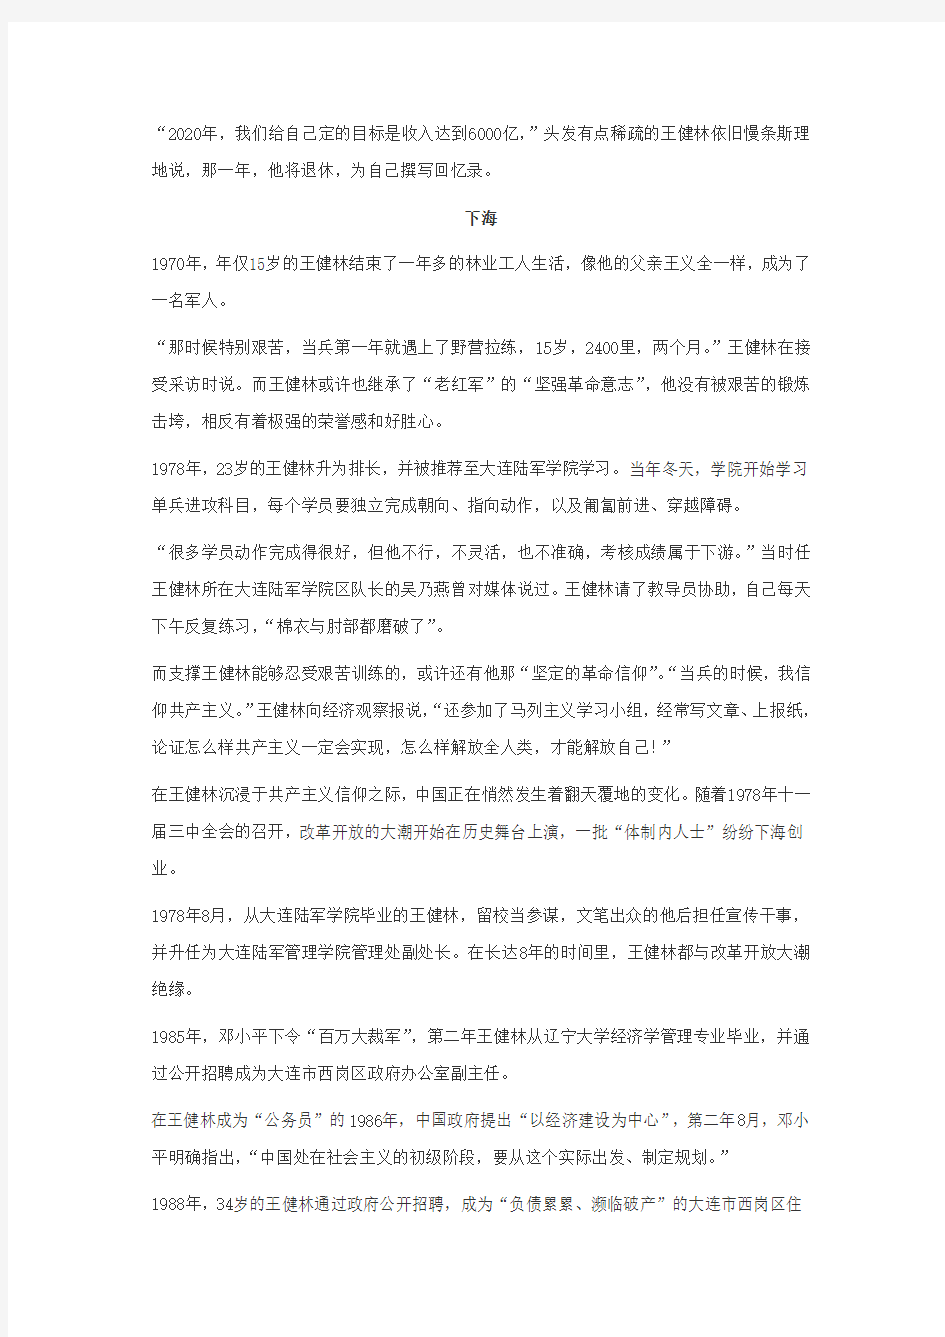 中国首富王健林的信仰